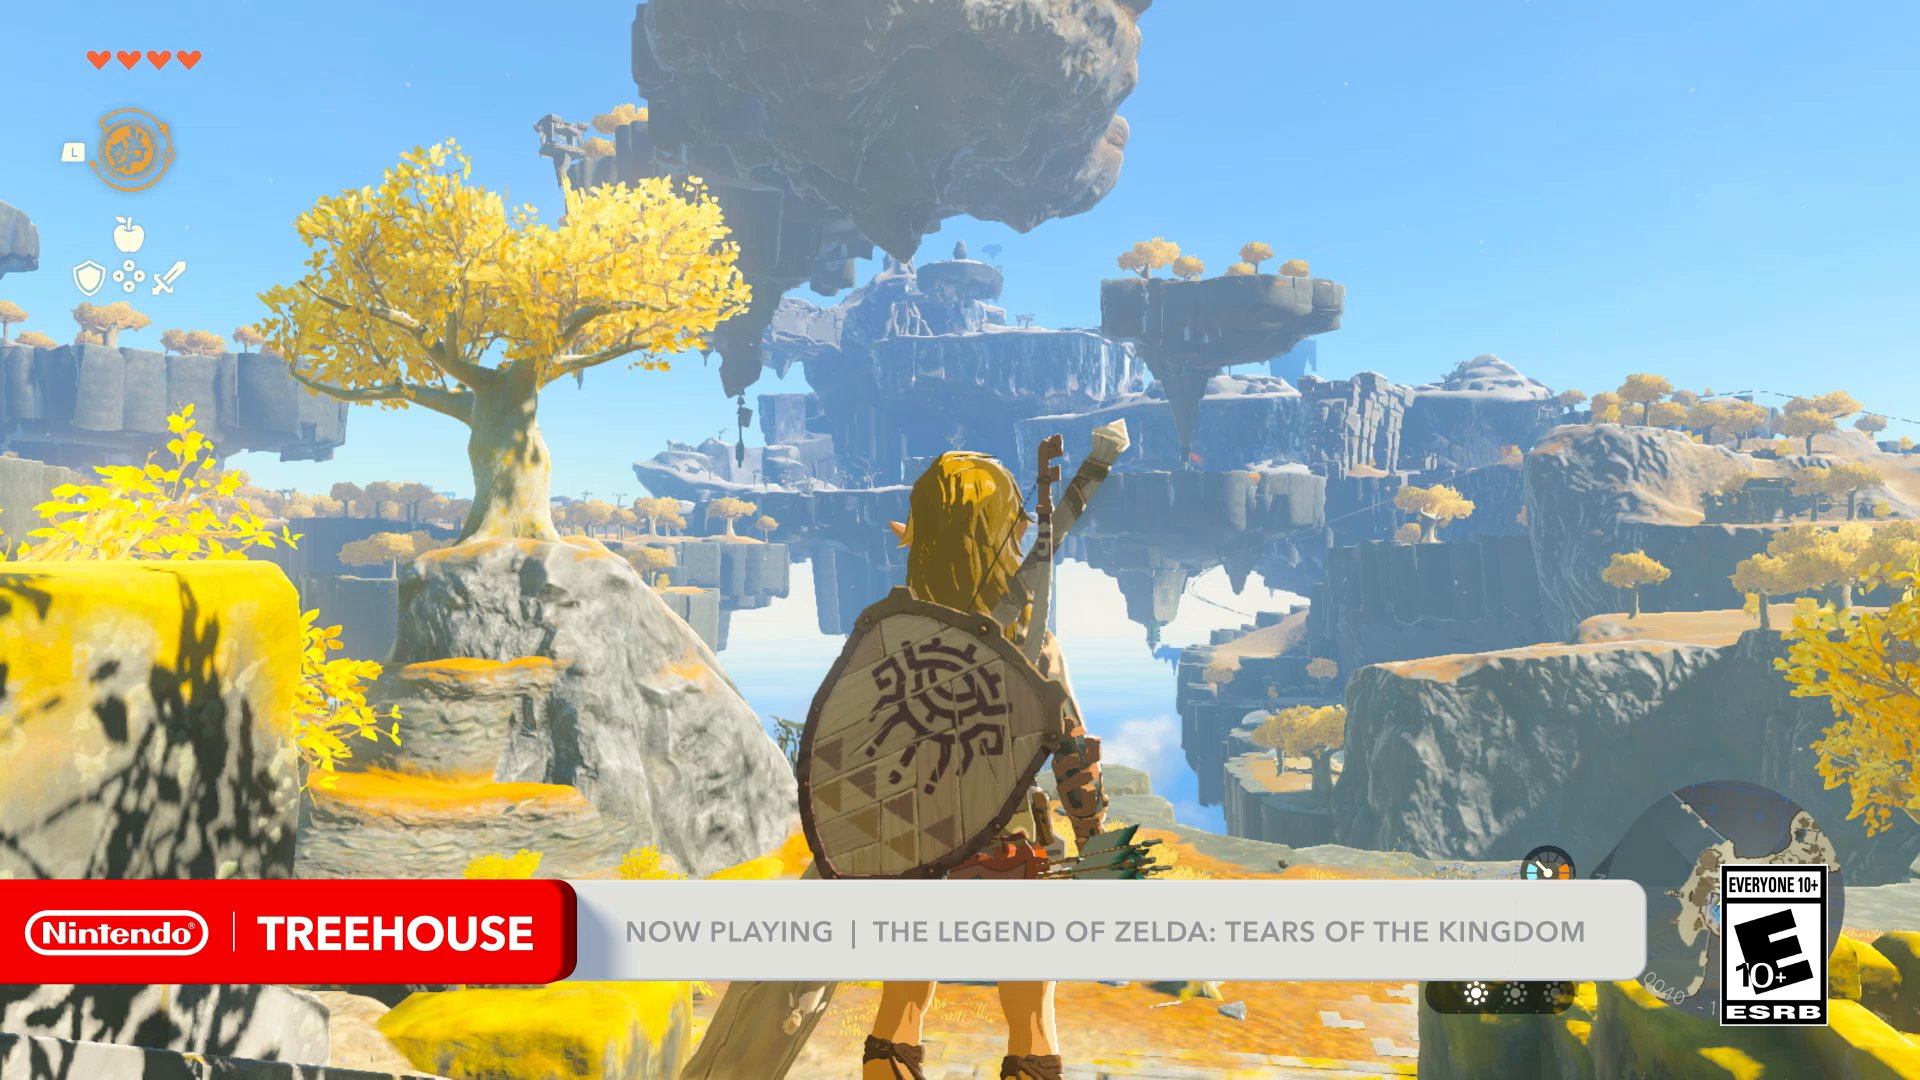 Nintendo Treehouse: Live — The Legend of Zelda: Tears of the Kingdom 